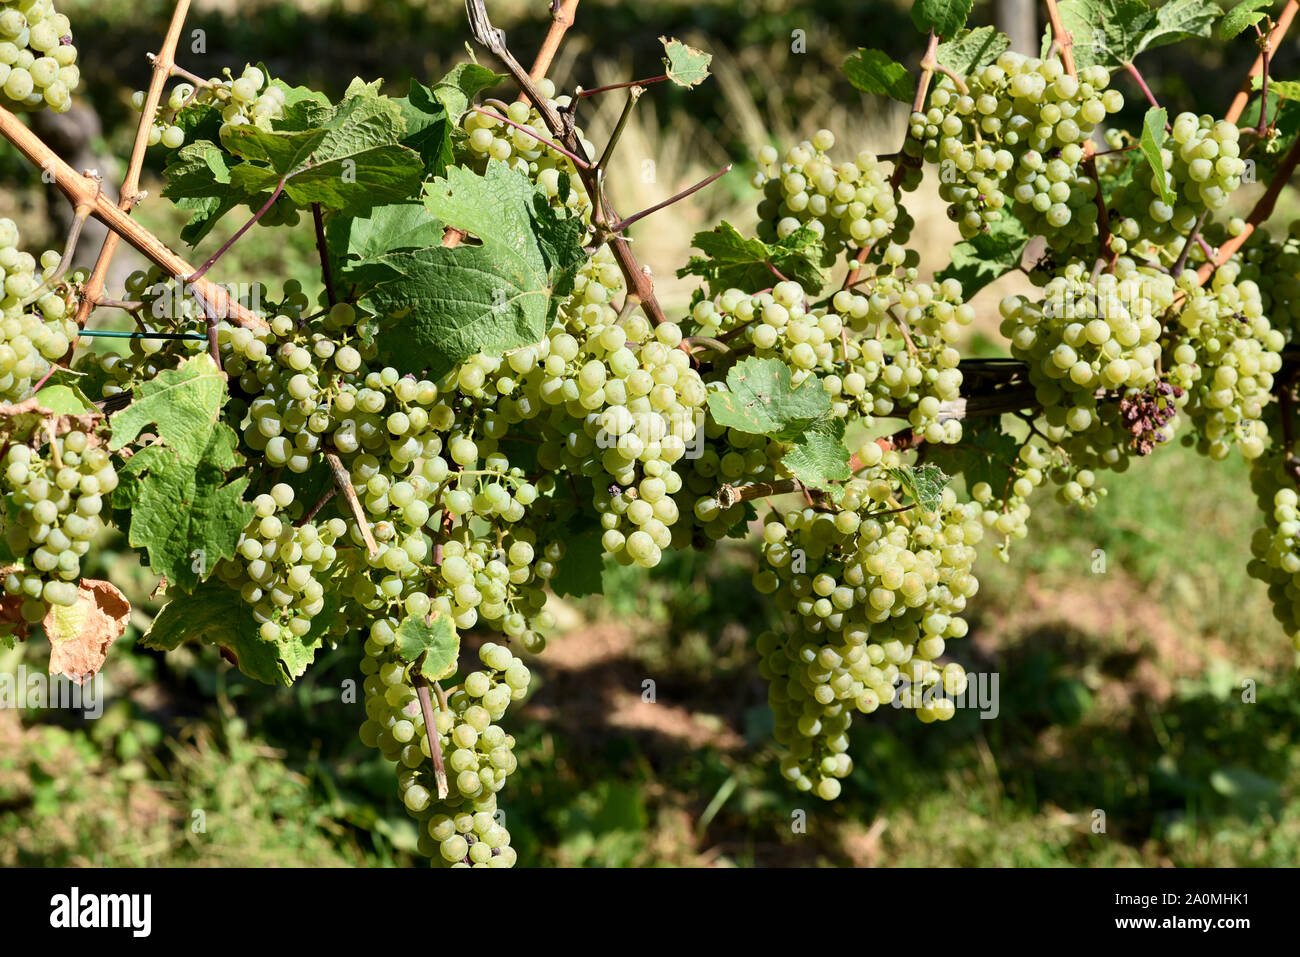 Die Rieslingrebe ist eine Weissweinsorte, die hauptsaechlich am Rhein und an der Mosel zu Wein vergoren wird. The Riesling vine is a white wine variet Stock Photo